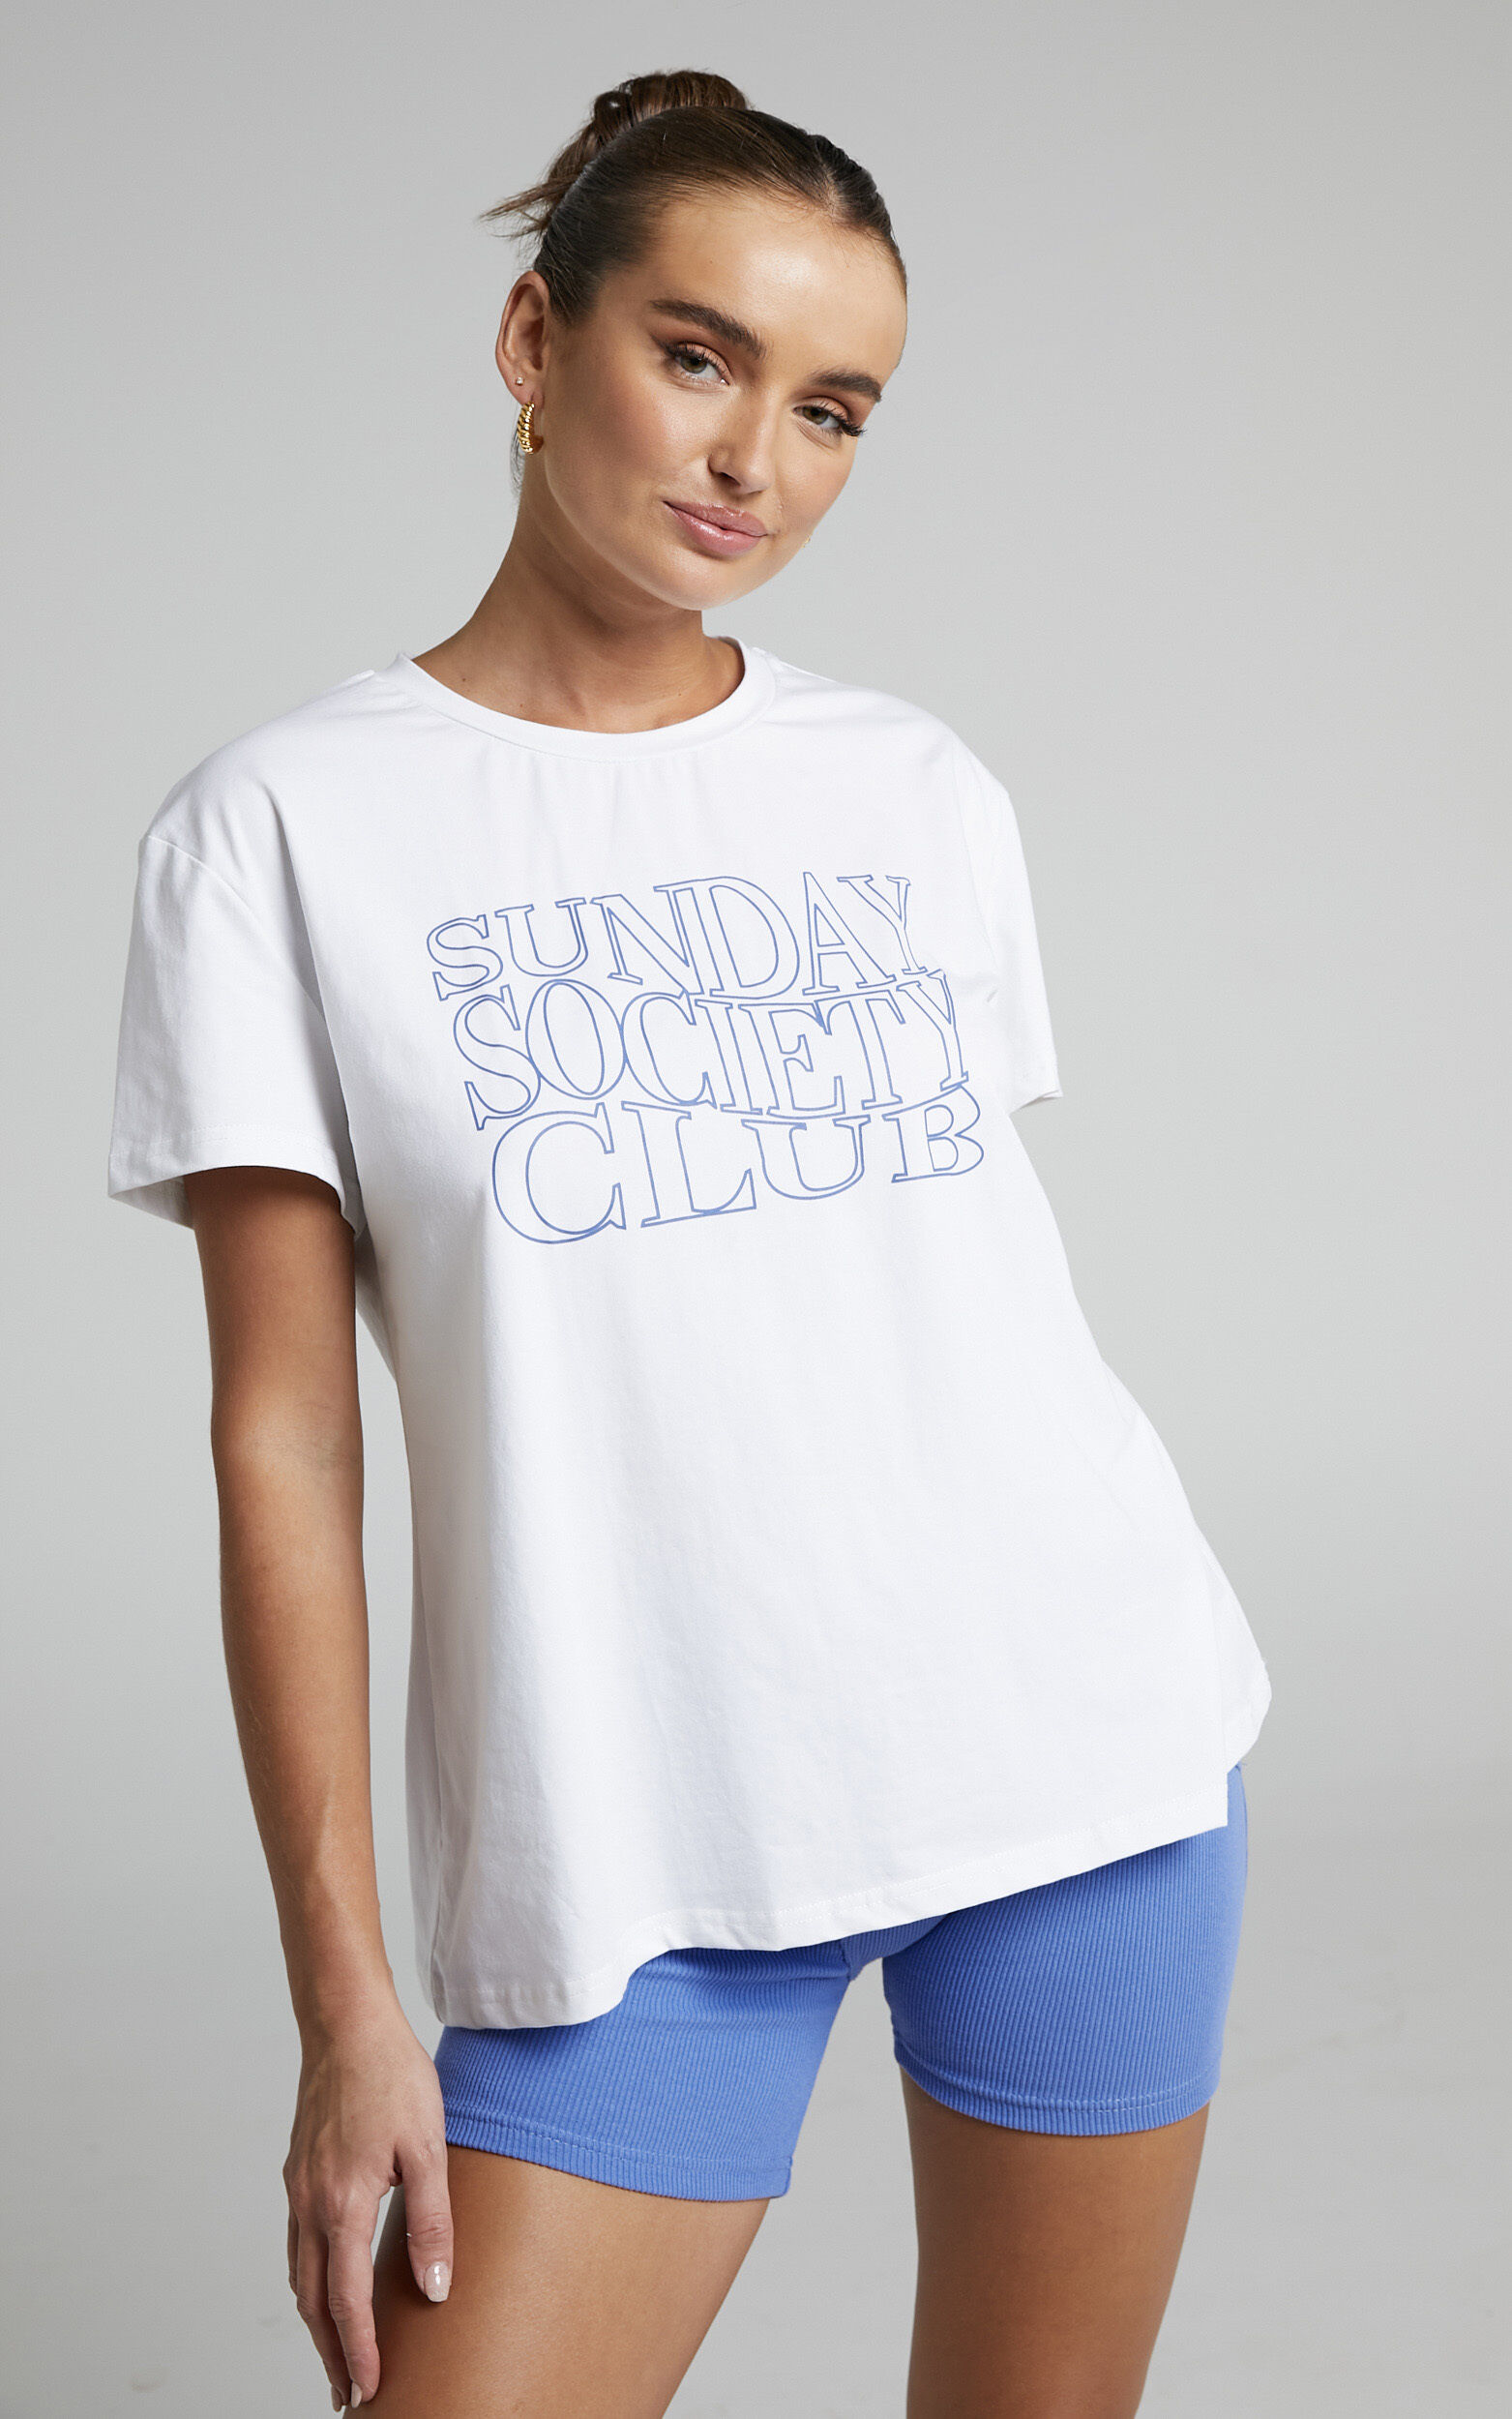 Sunday Society Club - Logo T-Shirt in White - 04, WHT2